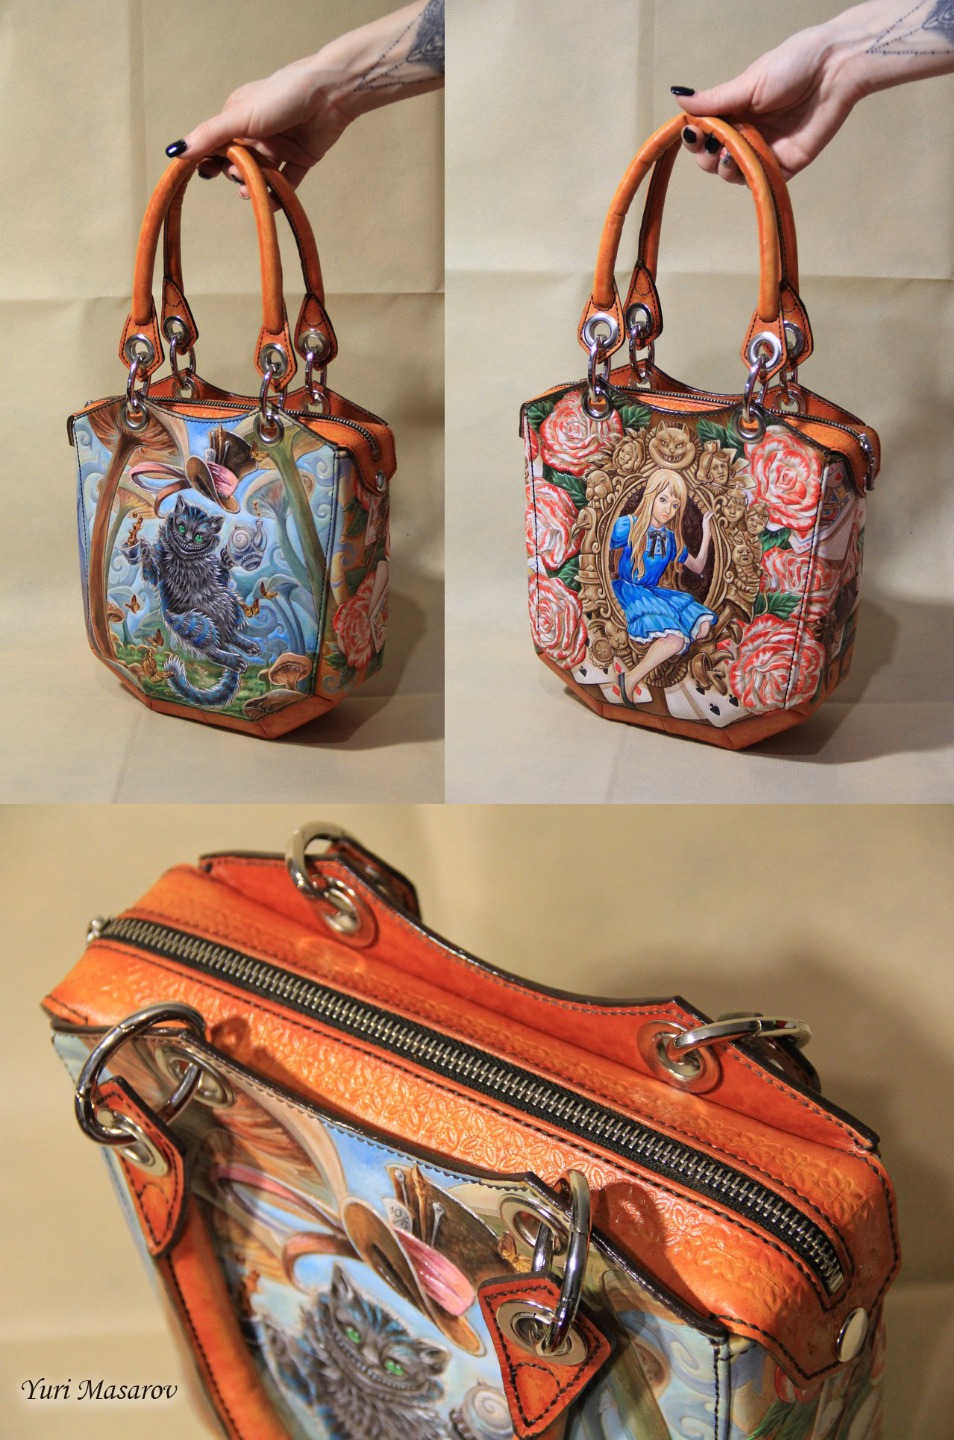 Женская кожаная сумка из оранжевой кожи расписанная красками по мотивам "Алиса в стране чудес"